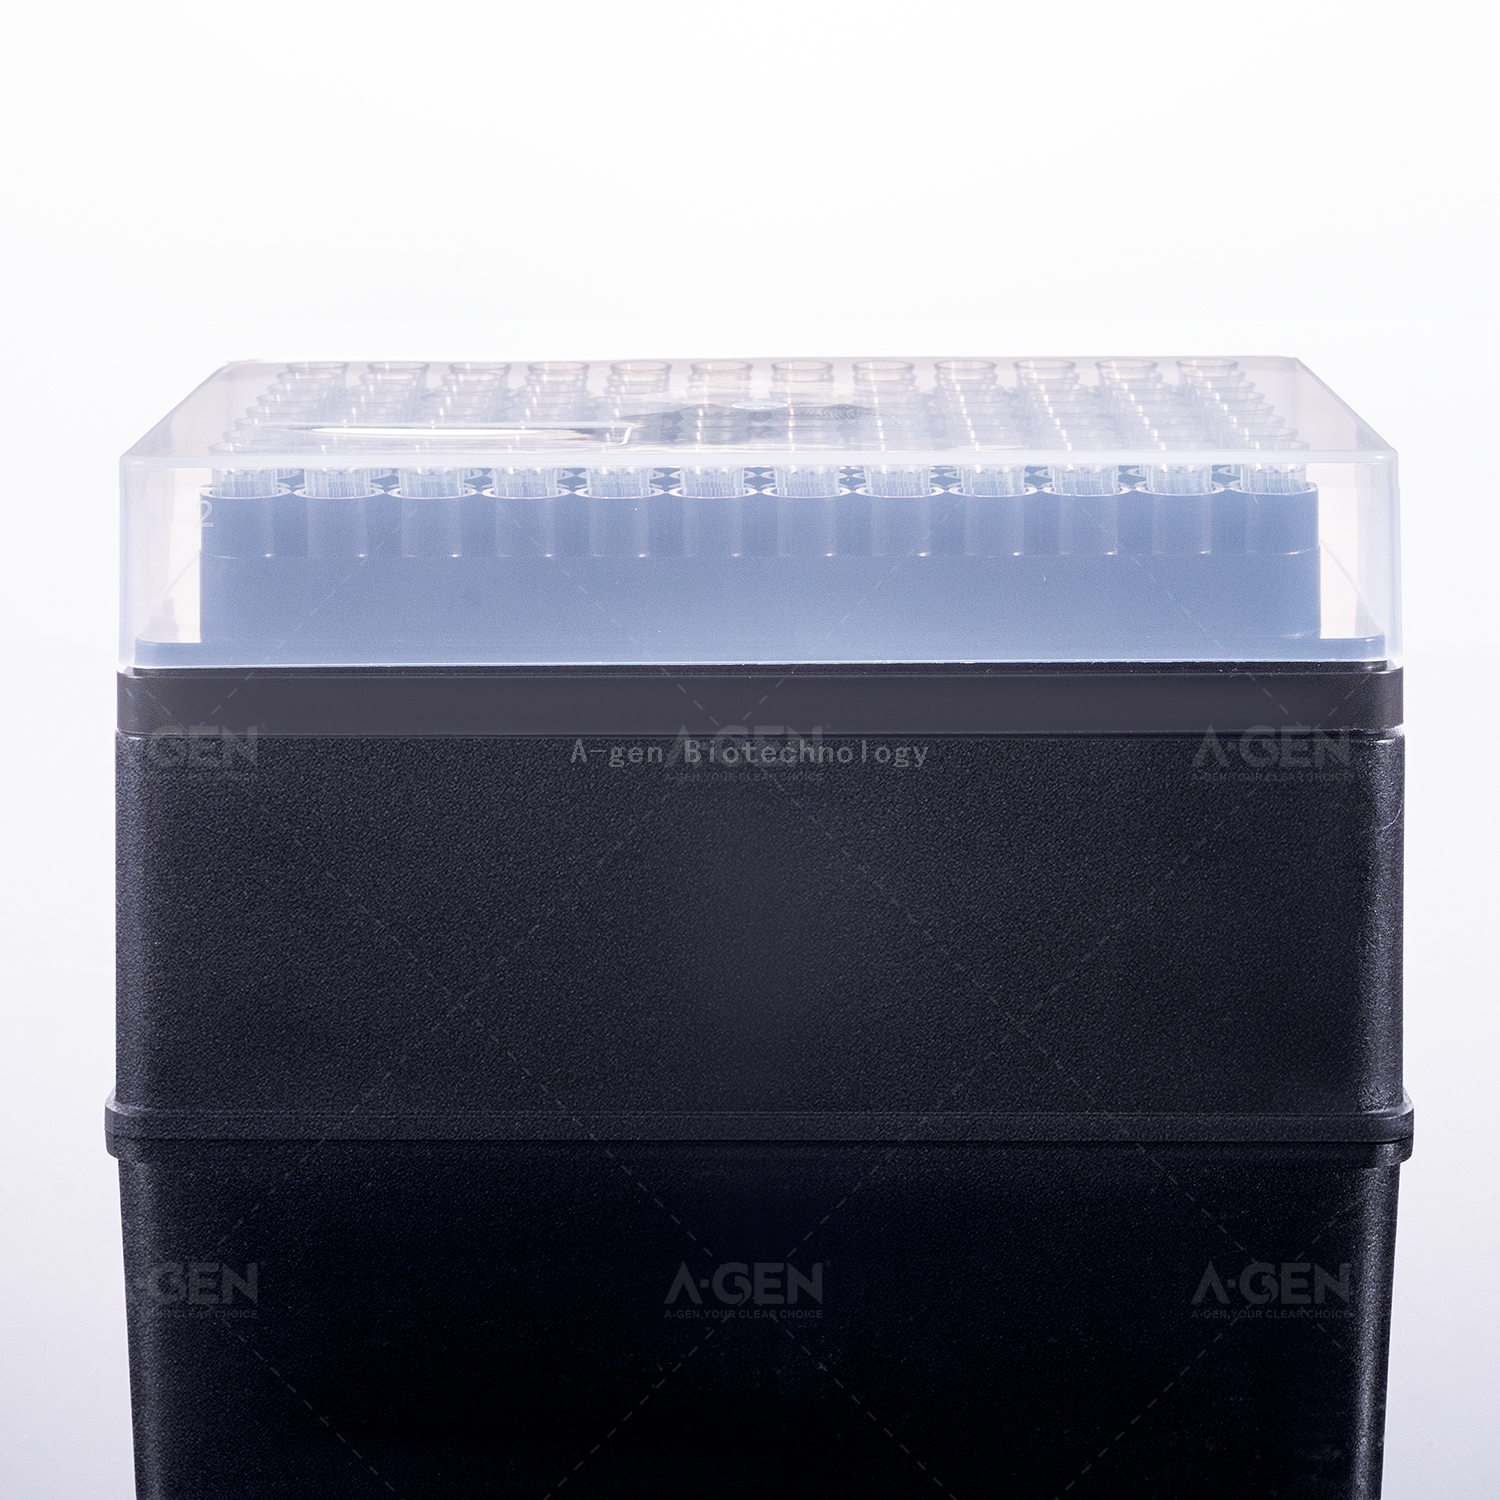 Opentrons 移液器吸头透明 200μL PP 移液器吸头（架装，无菌），用于不带过滤器的液体转移 OPT-200-RSL 低保留可选